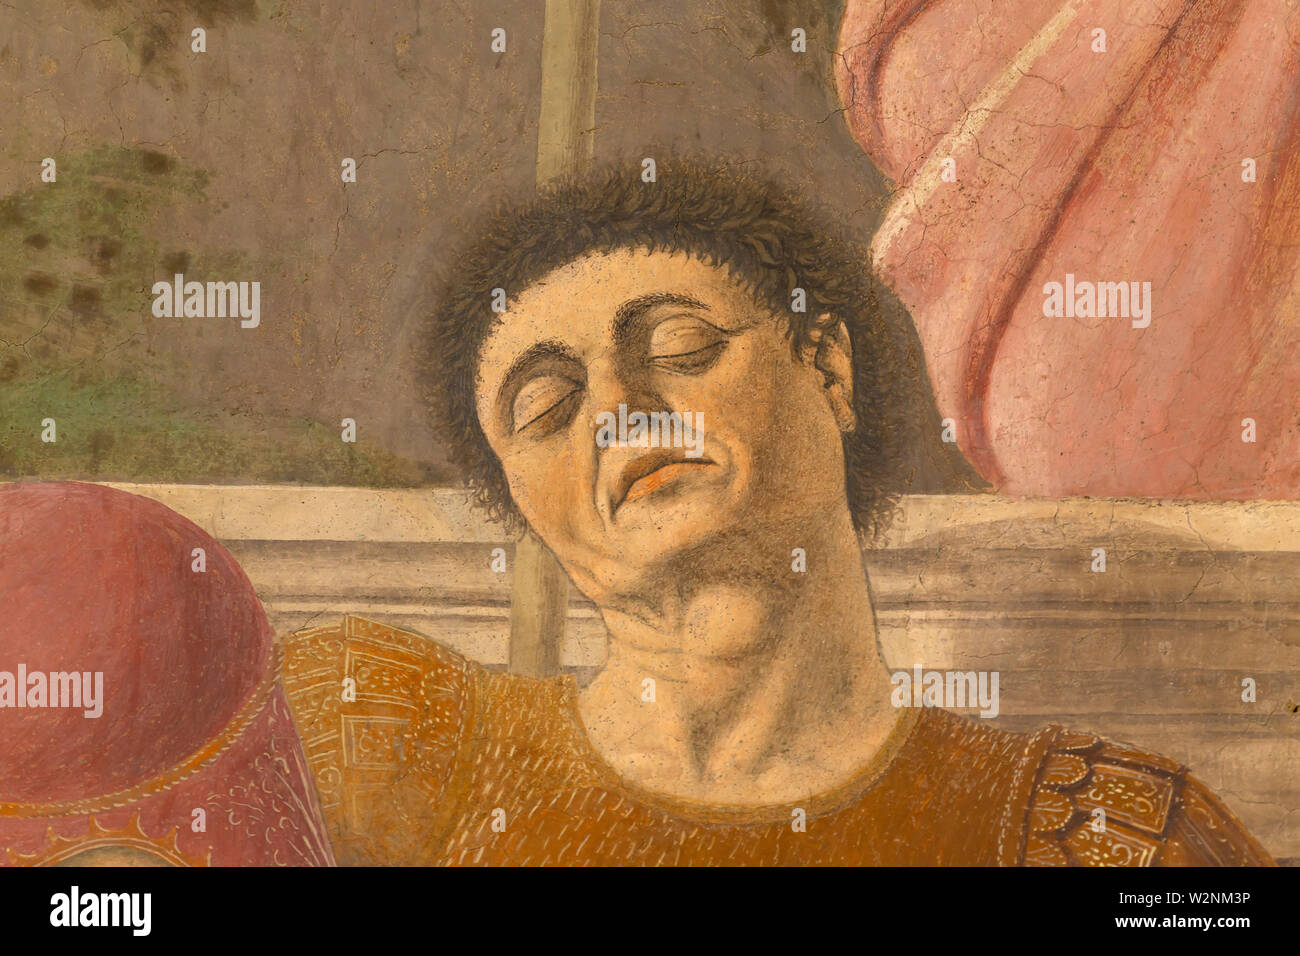 Soldat in Braun Rüstung, möglich Selbstportrait von Piero della Francesca, Detail, die Auferstehung, Piero della Francesca, 1460, Museo Civico, Sanse Stockfoto